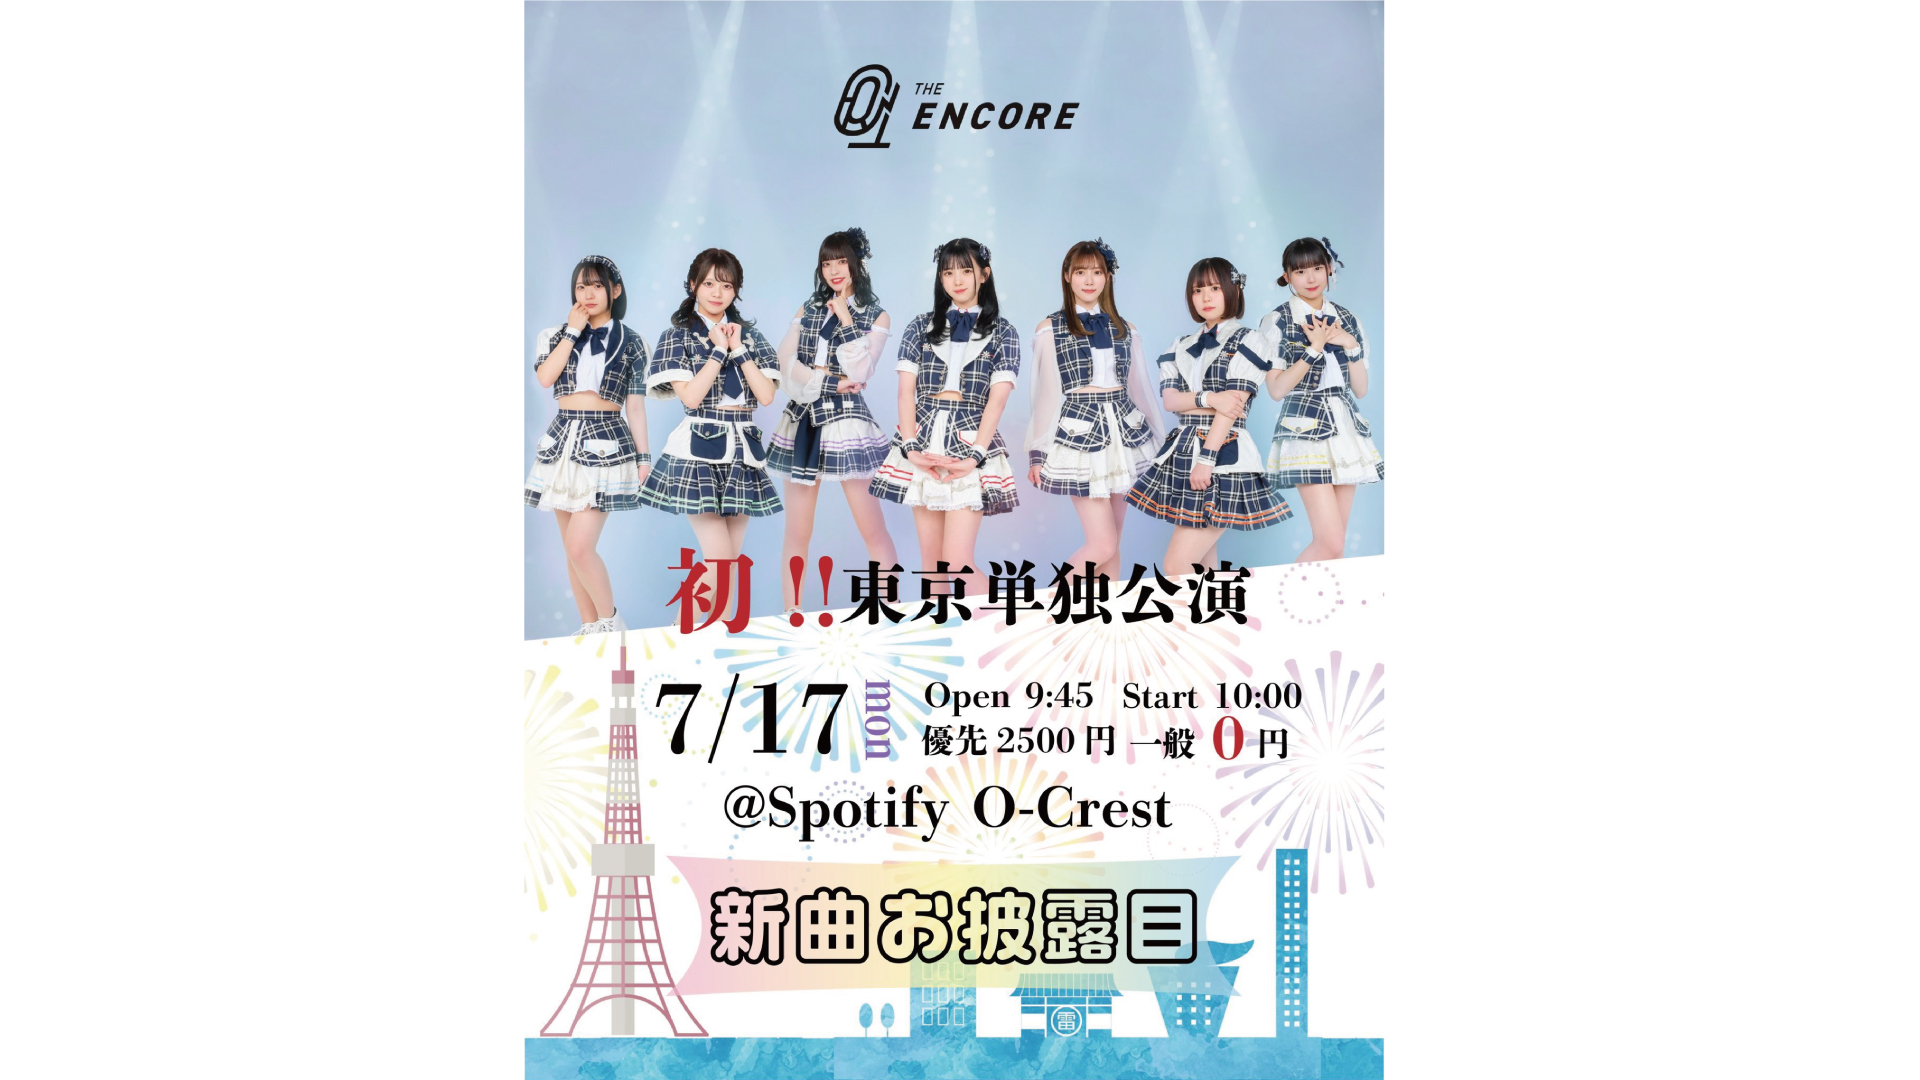 23/7/17 THE ENCORE ”初”東京単独公演〜新曲お披露目〜